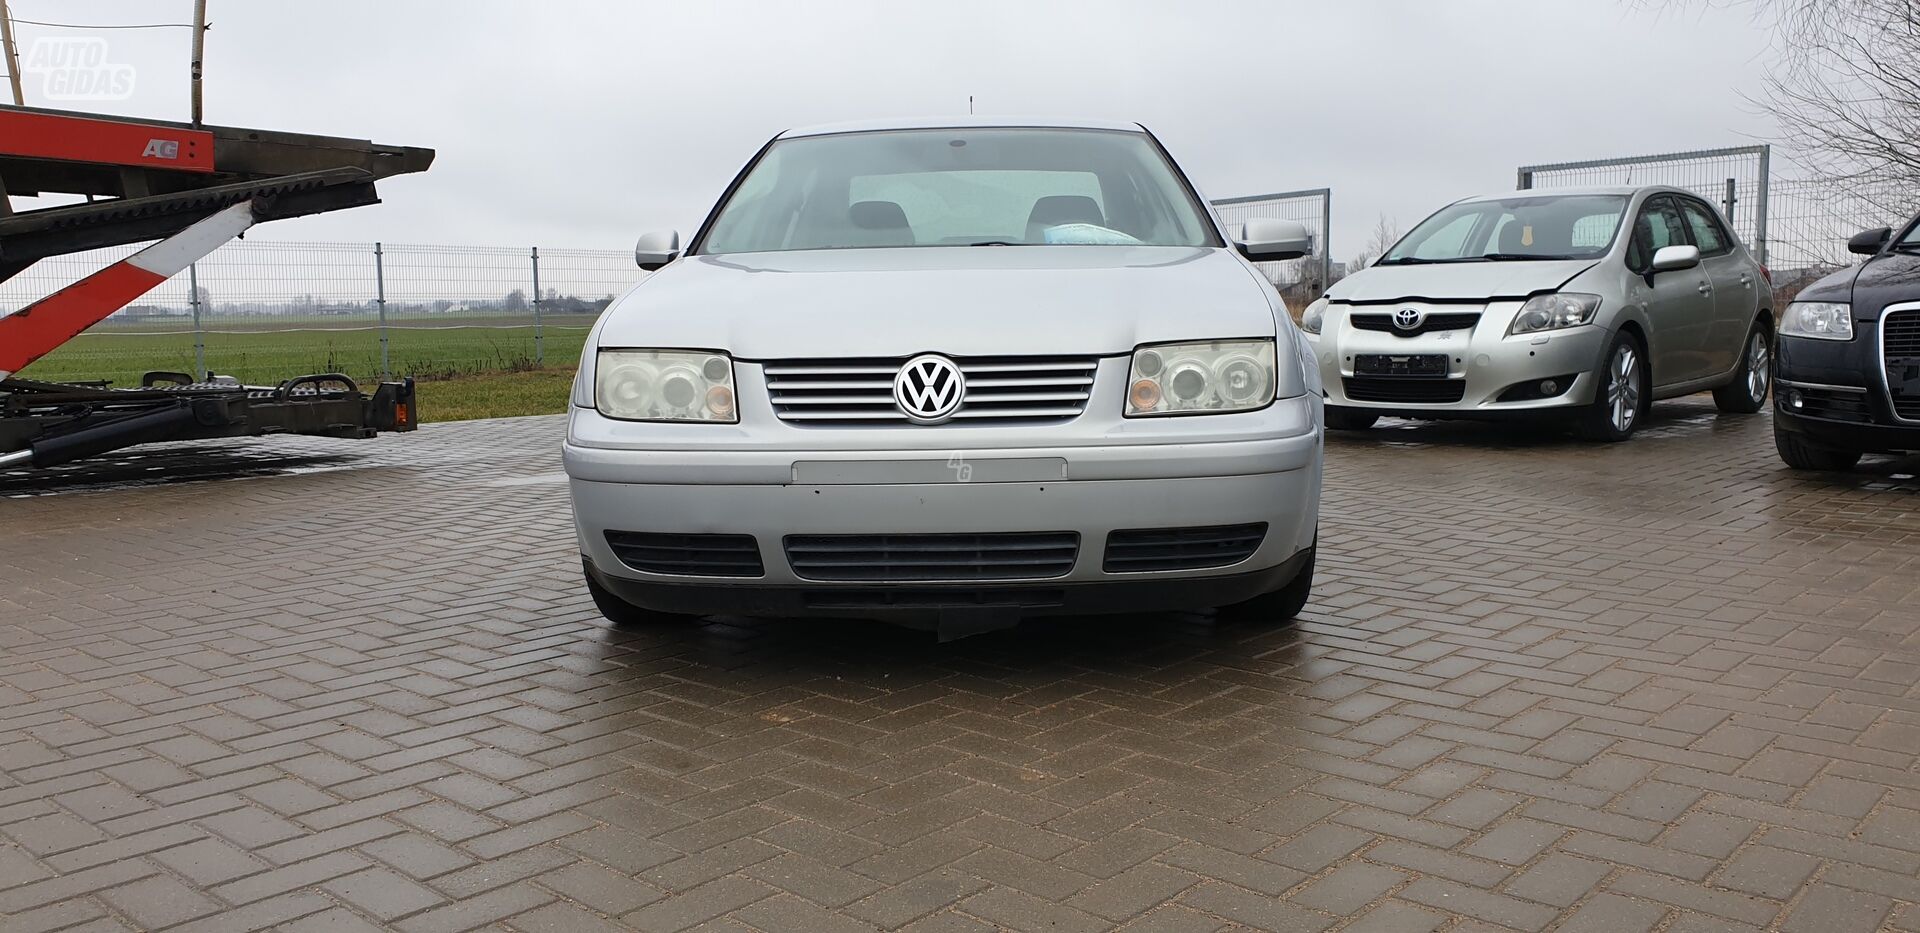 Volkswagen Bora Basis 1999 m